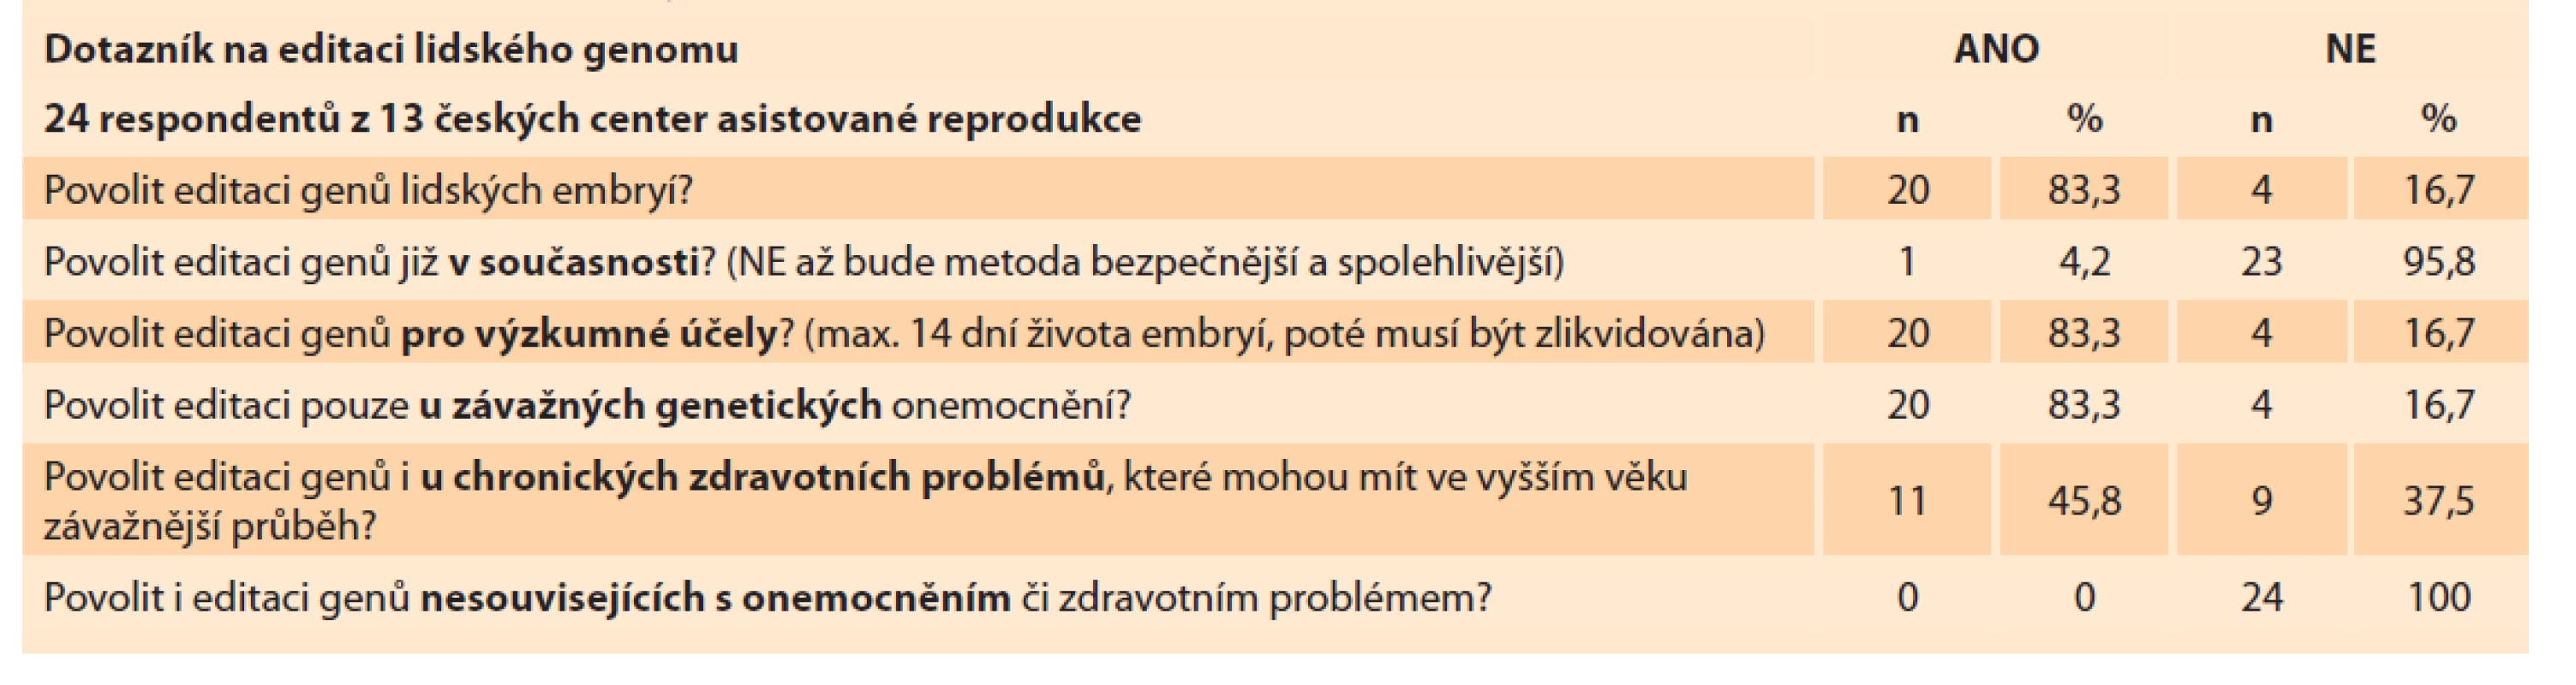 Názory českých embryologů na editaci lidského genomu.<br>
Tab. 2. Opinions of Czech embryologists on editing the human genome.